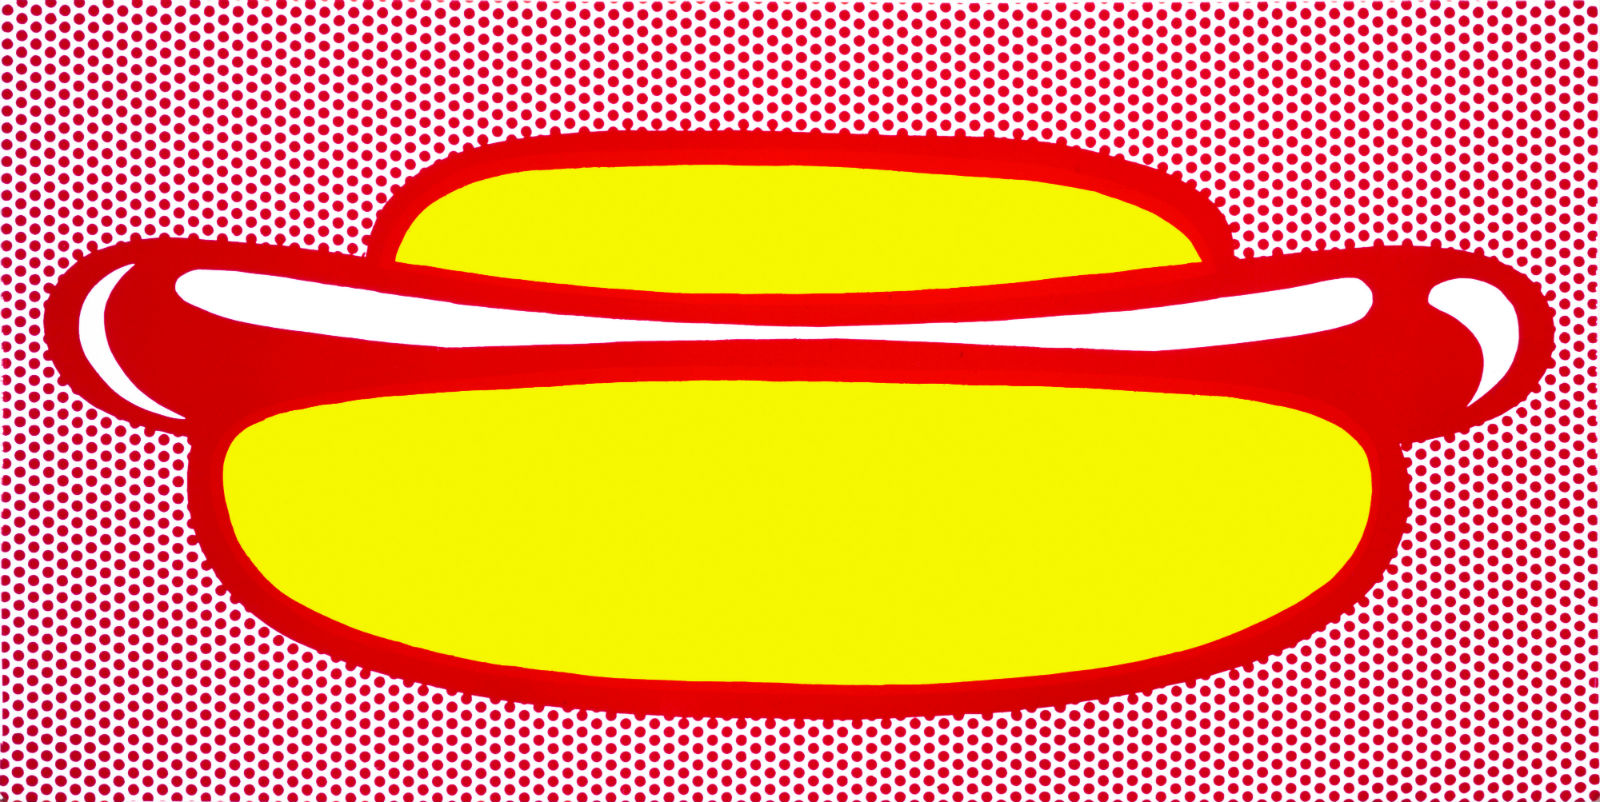 Hot Dog 1964